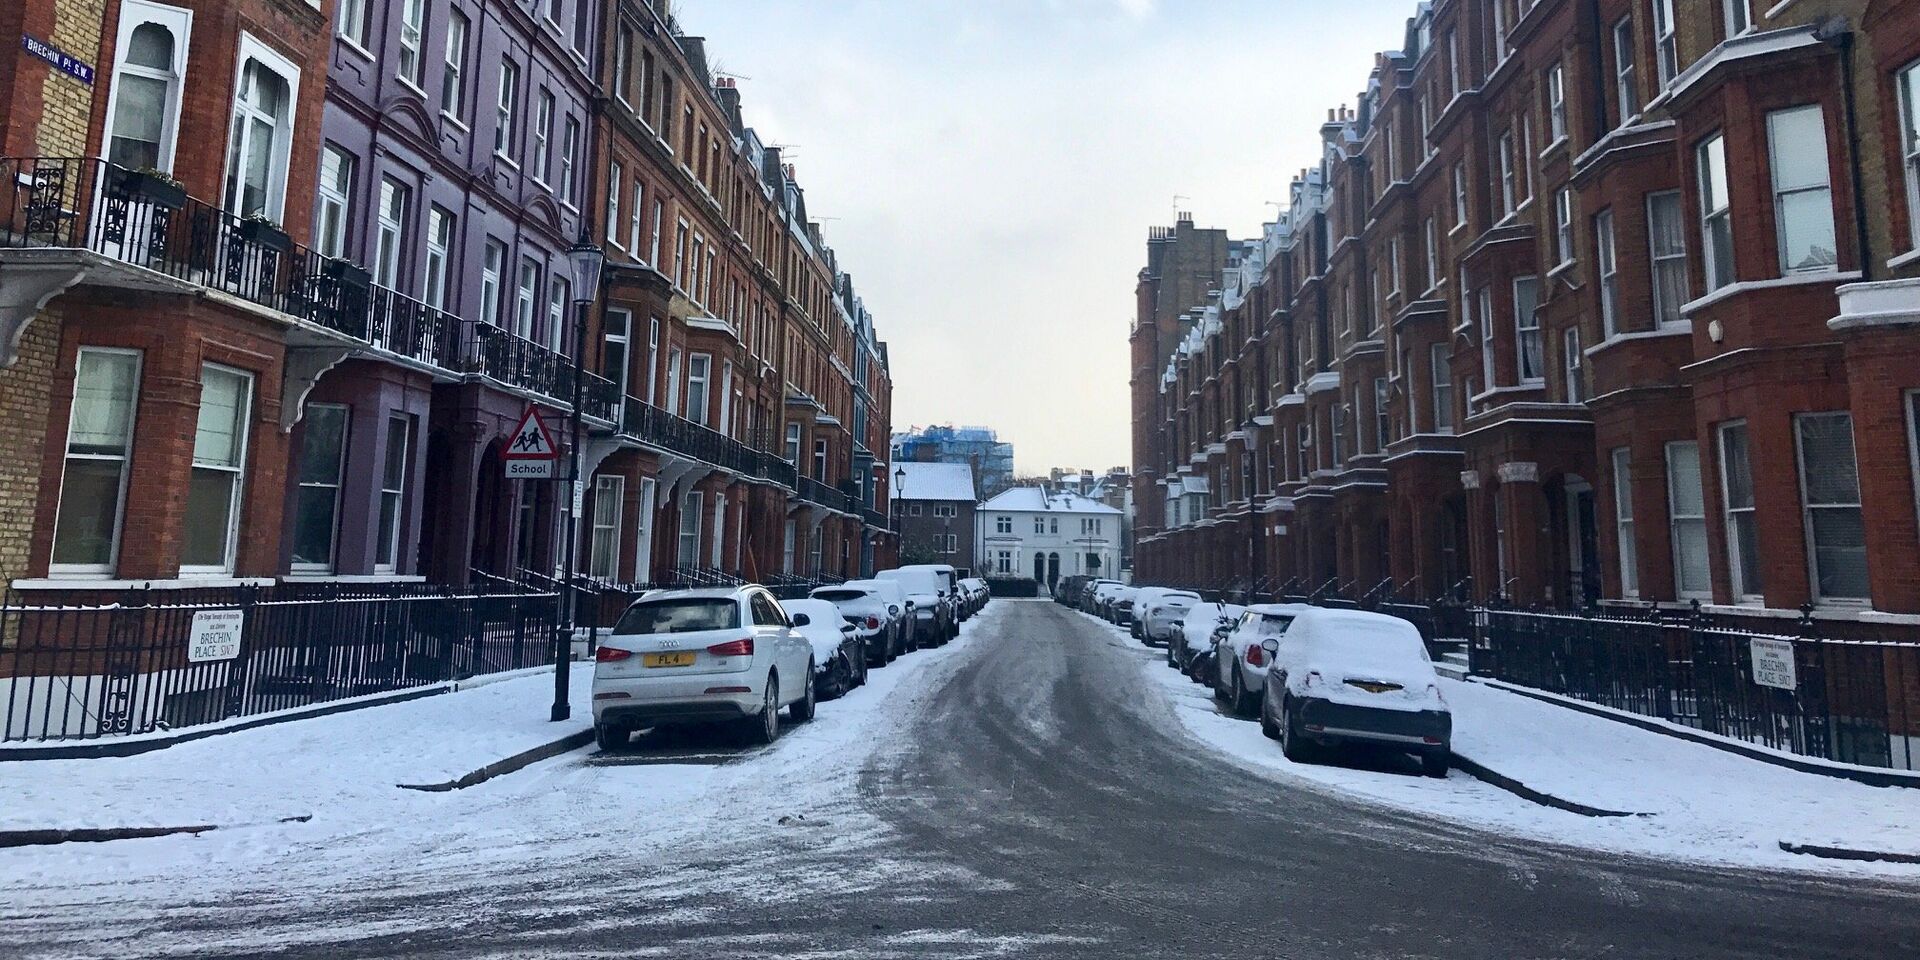 Снег, выпавший на улицах Лондона. 28 февраля 2018 - ИноСМИ, 1920, 07.09.2021